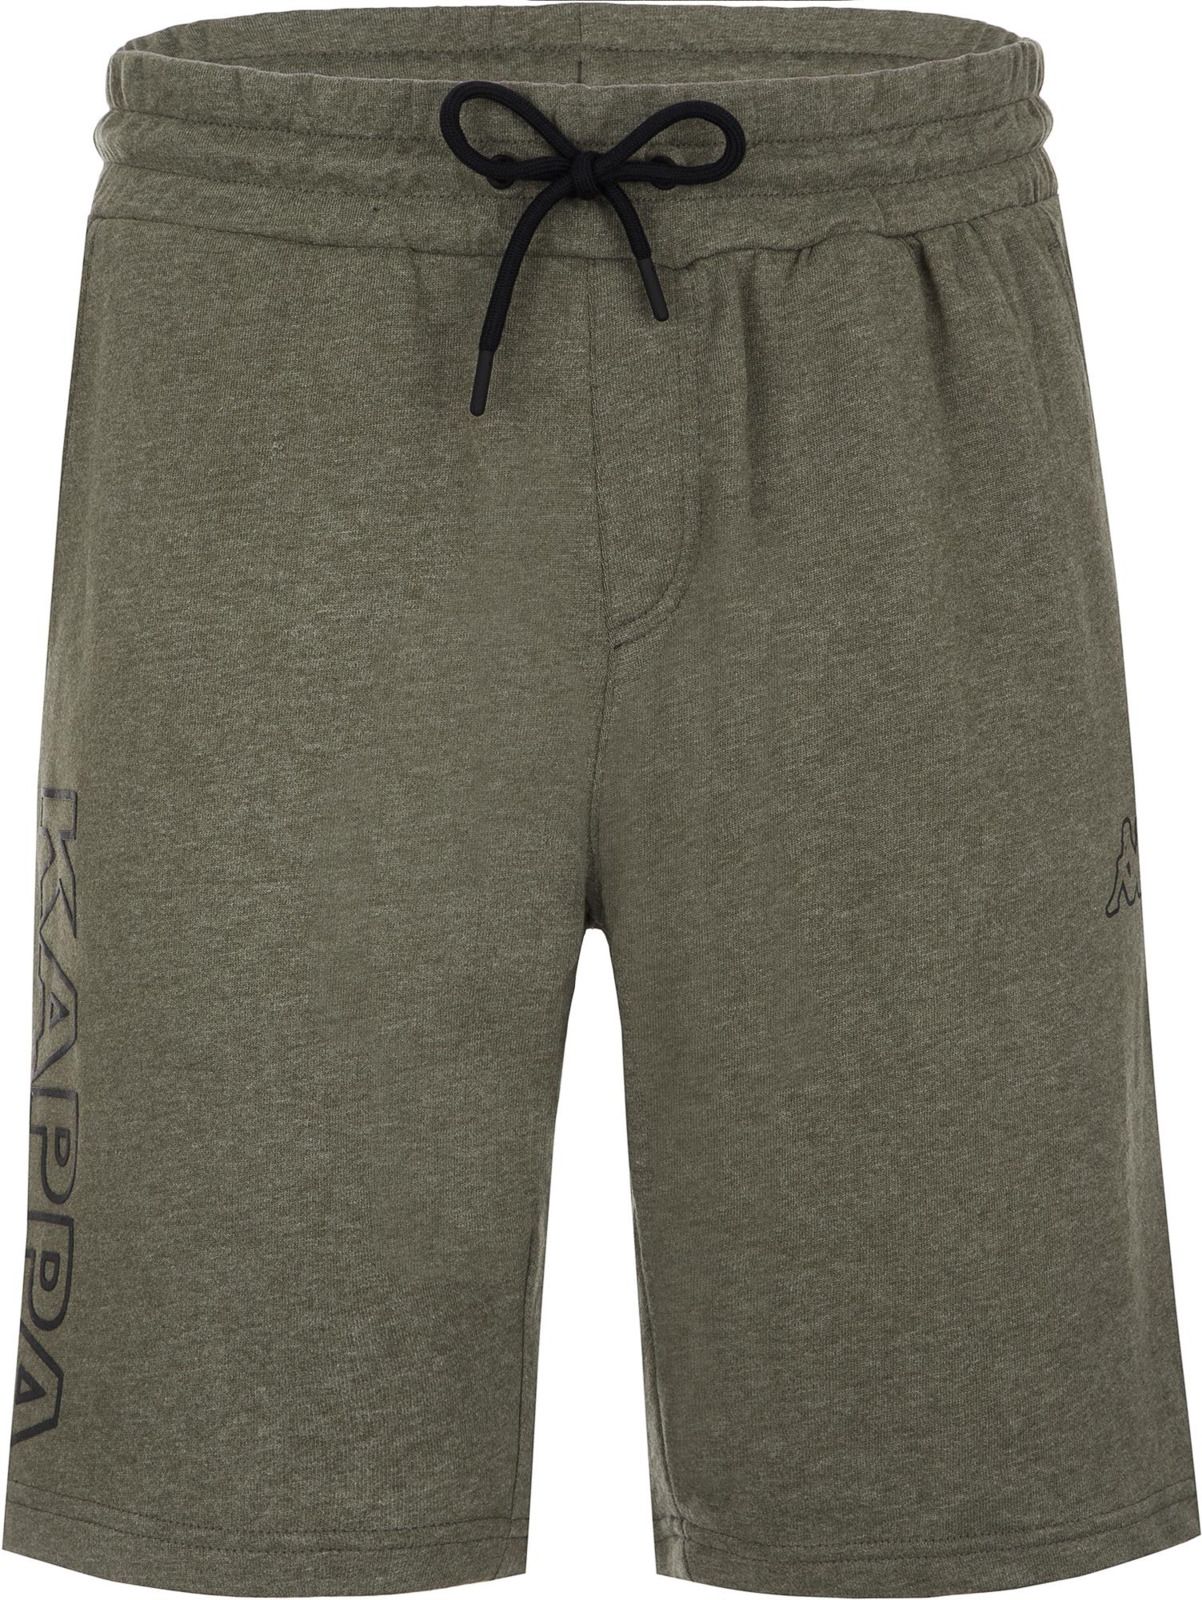   Kappa Men's Shorts, : -. 304IDQ0-5U.  XL (52)